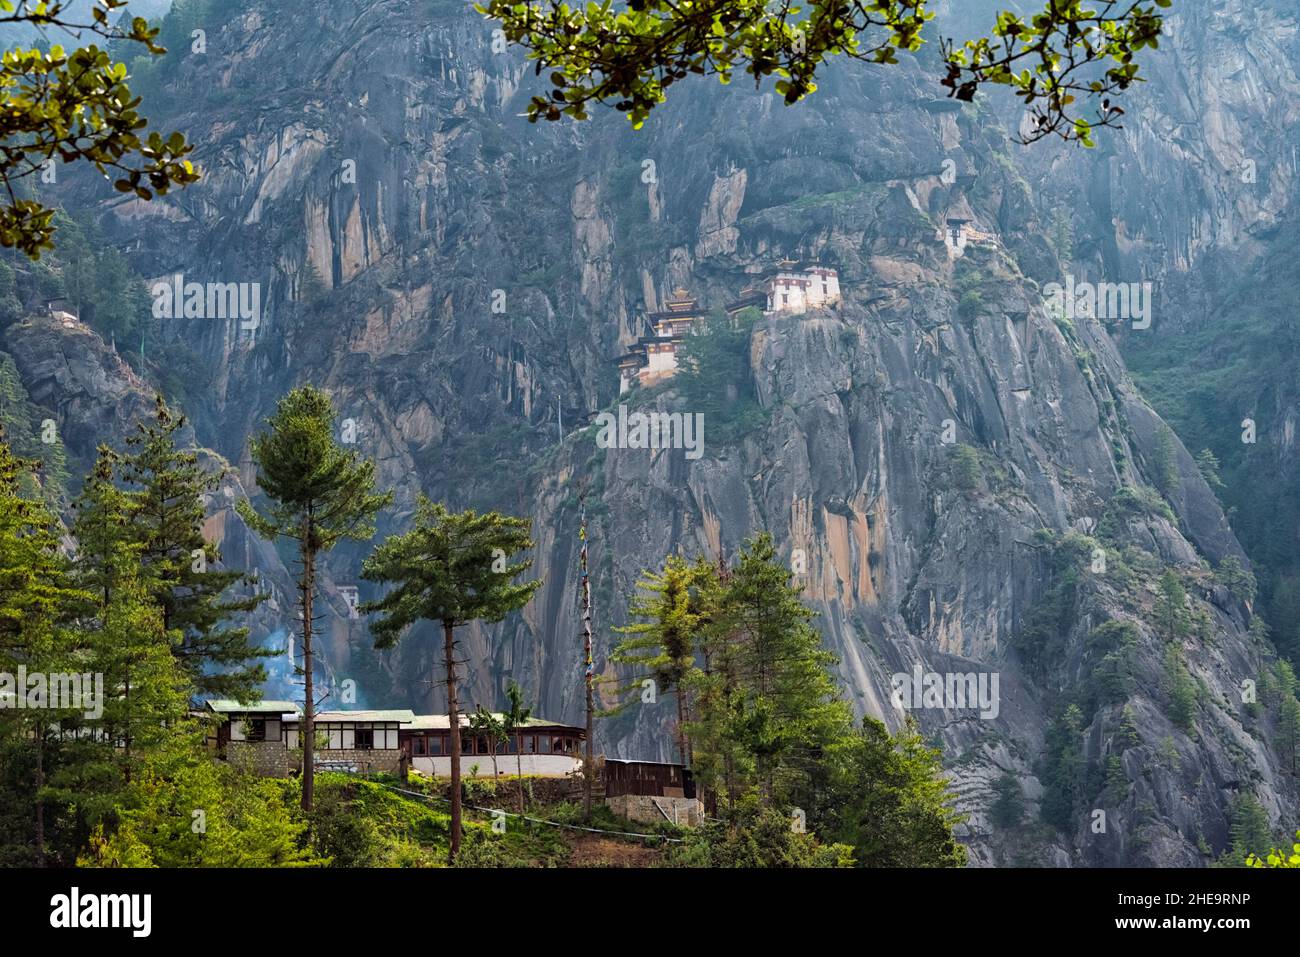 Paro Taktsang (également connu sous le nom de Tiger's Nest) perché sur la falaise, Paro, Bhoutan Banque D'Images